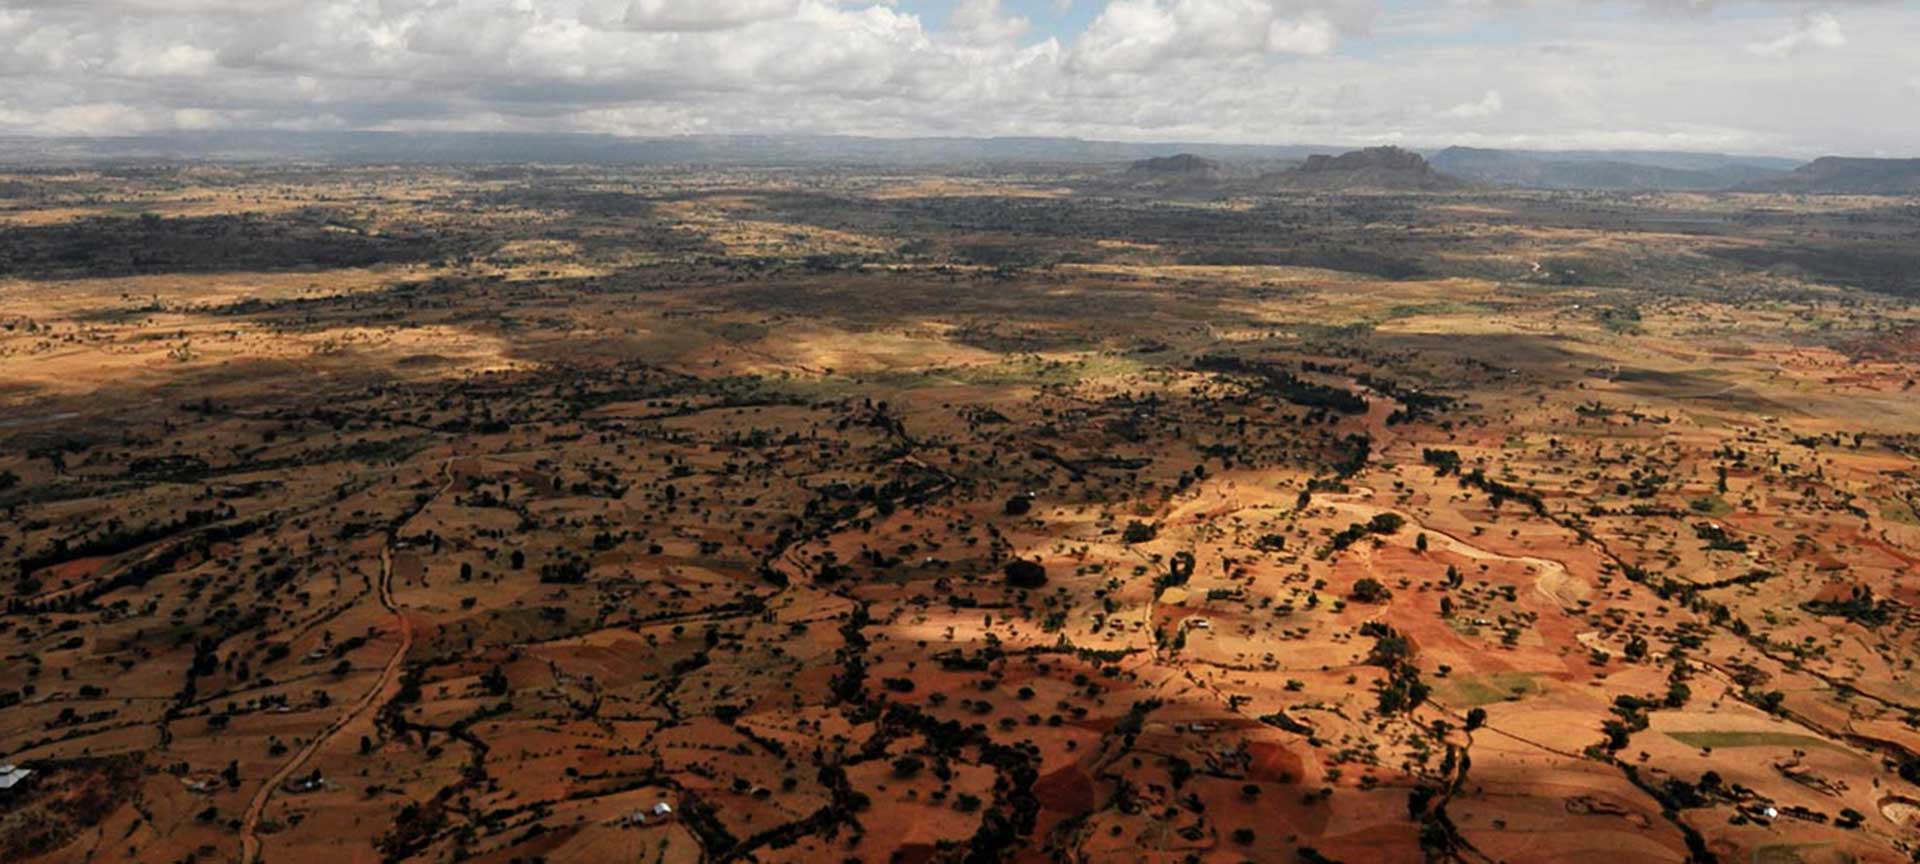 Landscape in Ethiopia